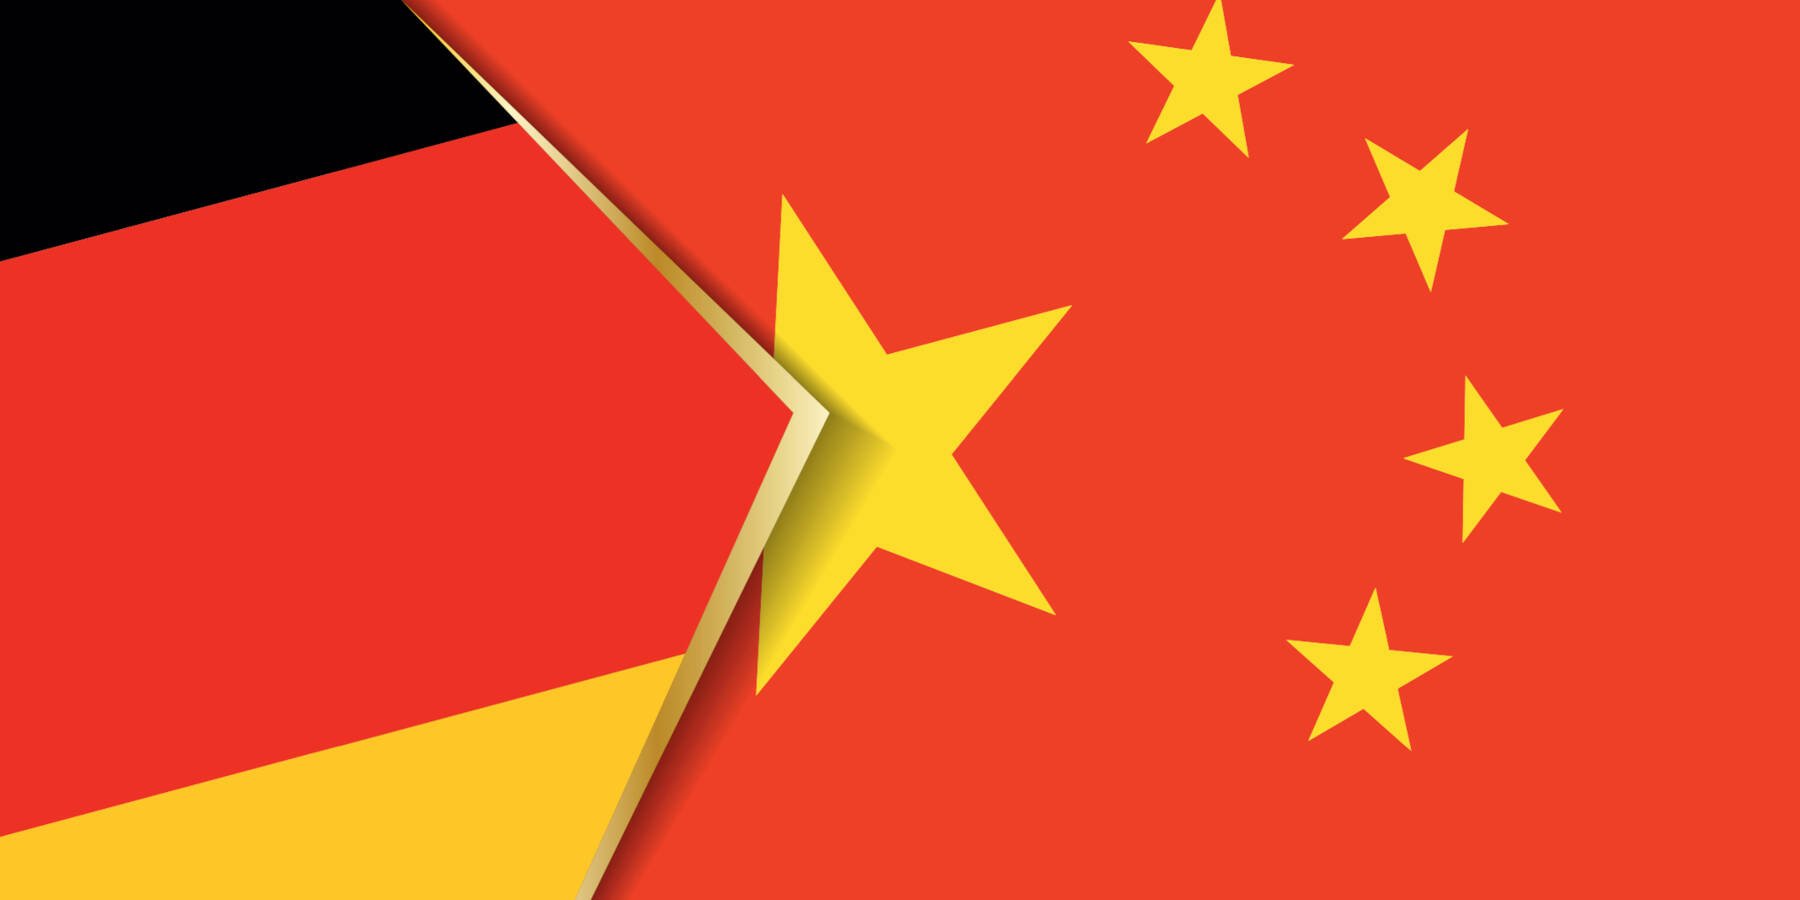 Deutschland verhaftet drei Personen, denen vorgeworfen wird, Marine-Militärtechnologie nach China zu schmuggeln. • Rekord